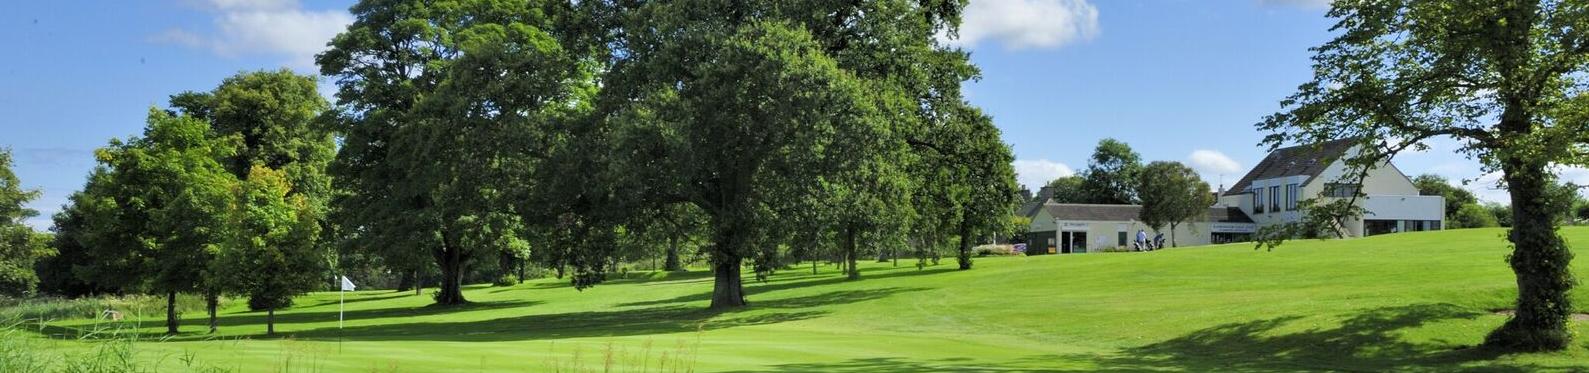 haddington golfclub1crop